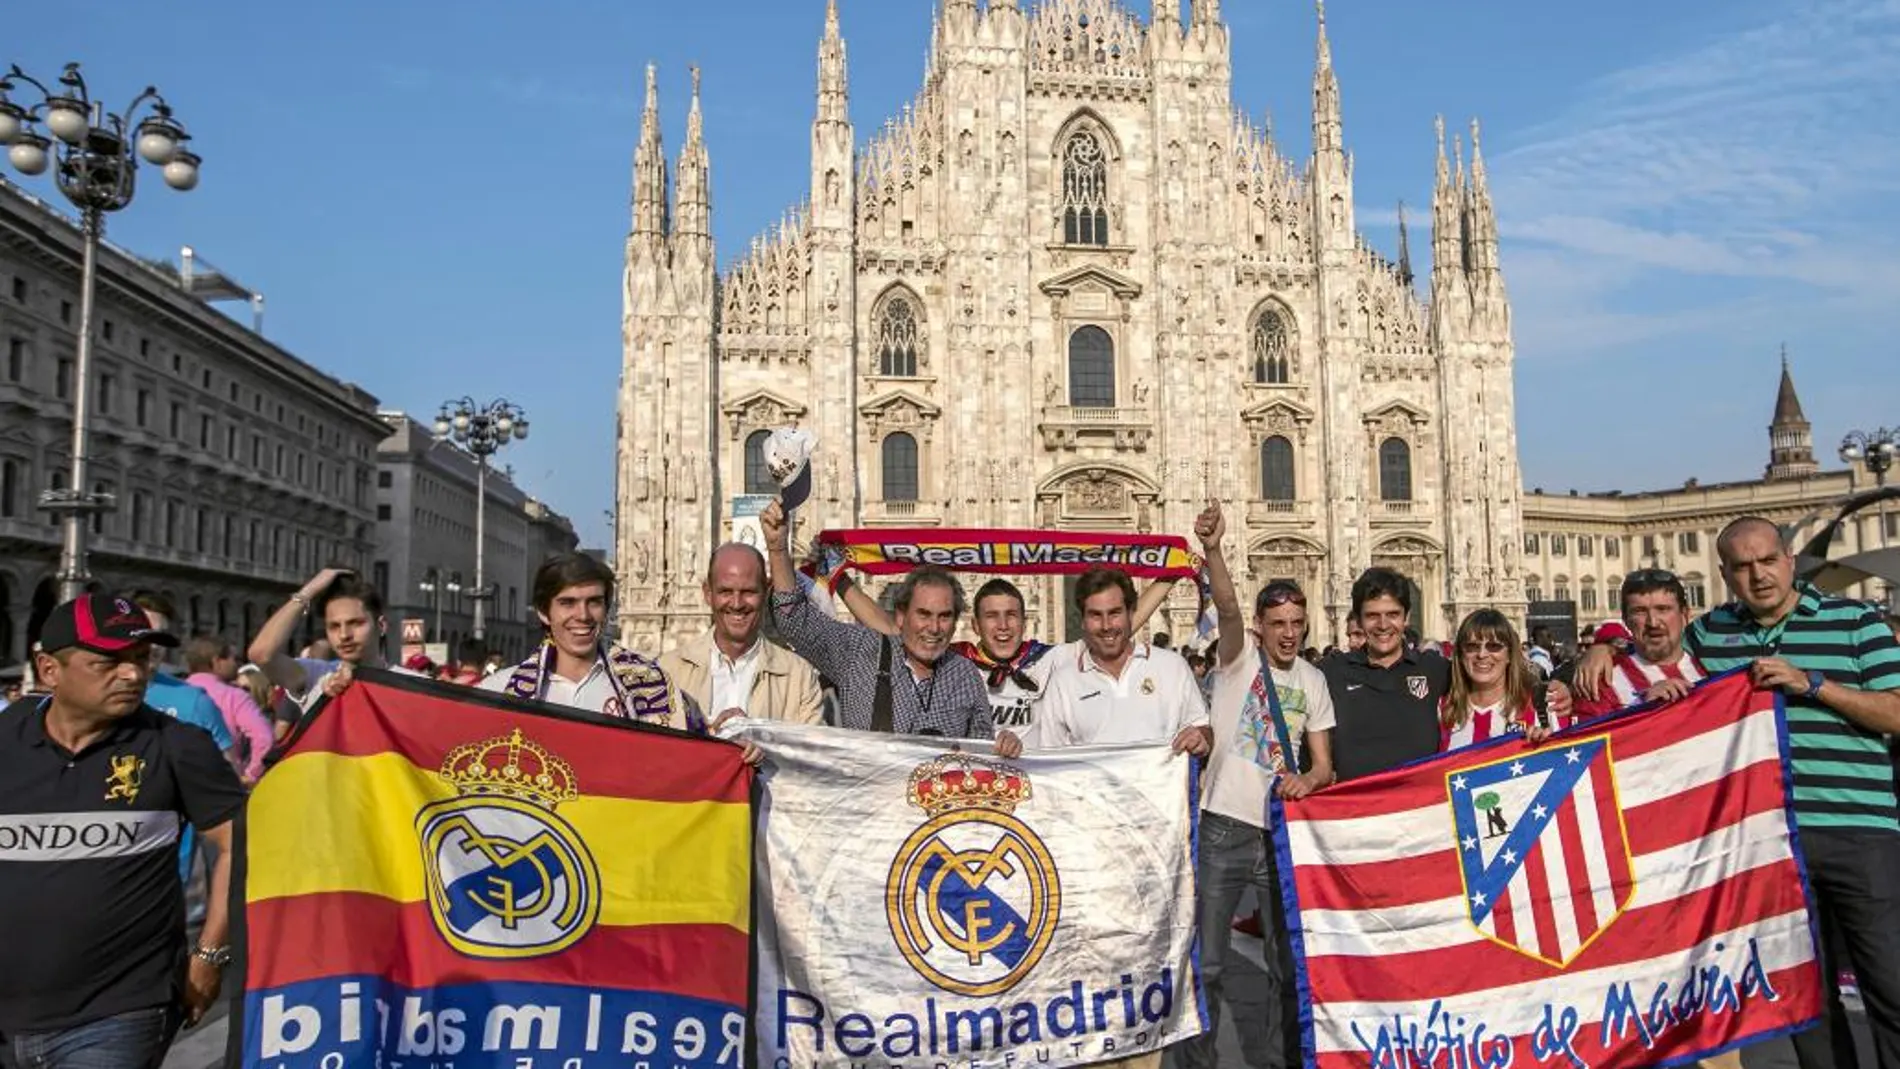 Los seguidores del Real Madrid y del Atlético convivieron pacíficamente en los alrededores del Duomo